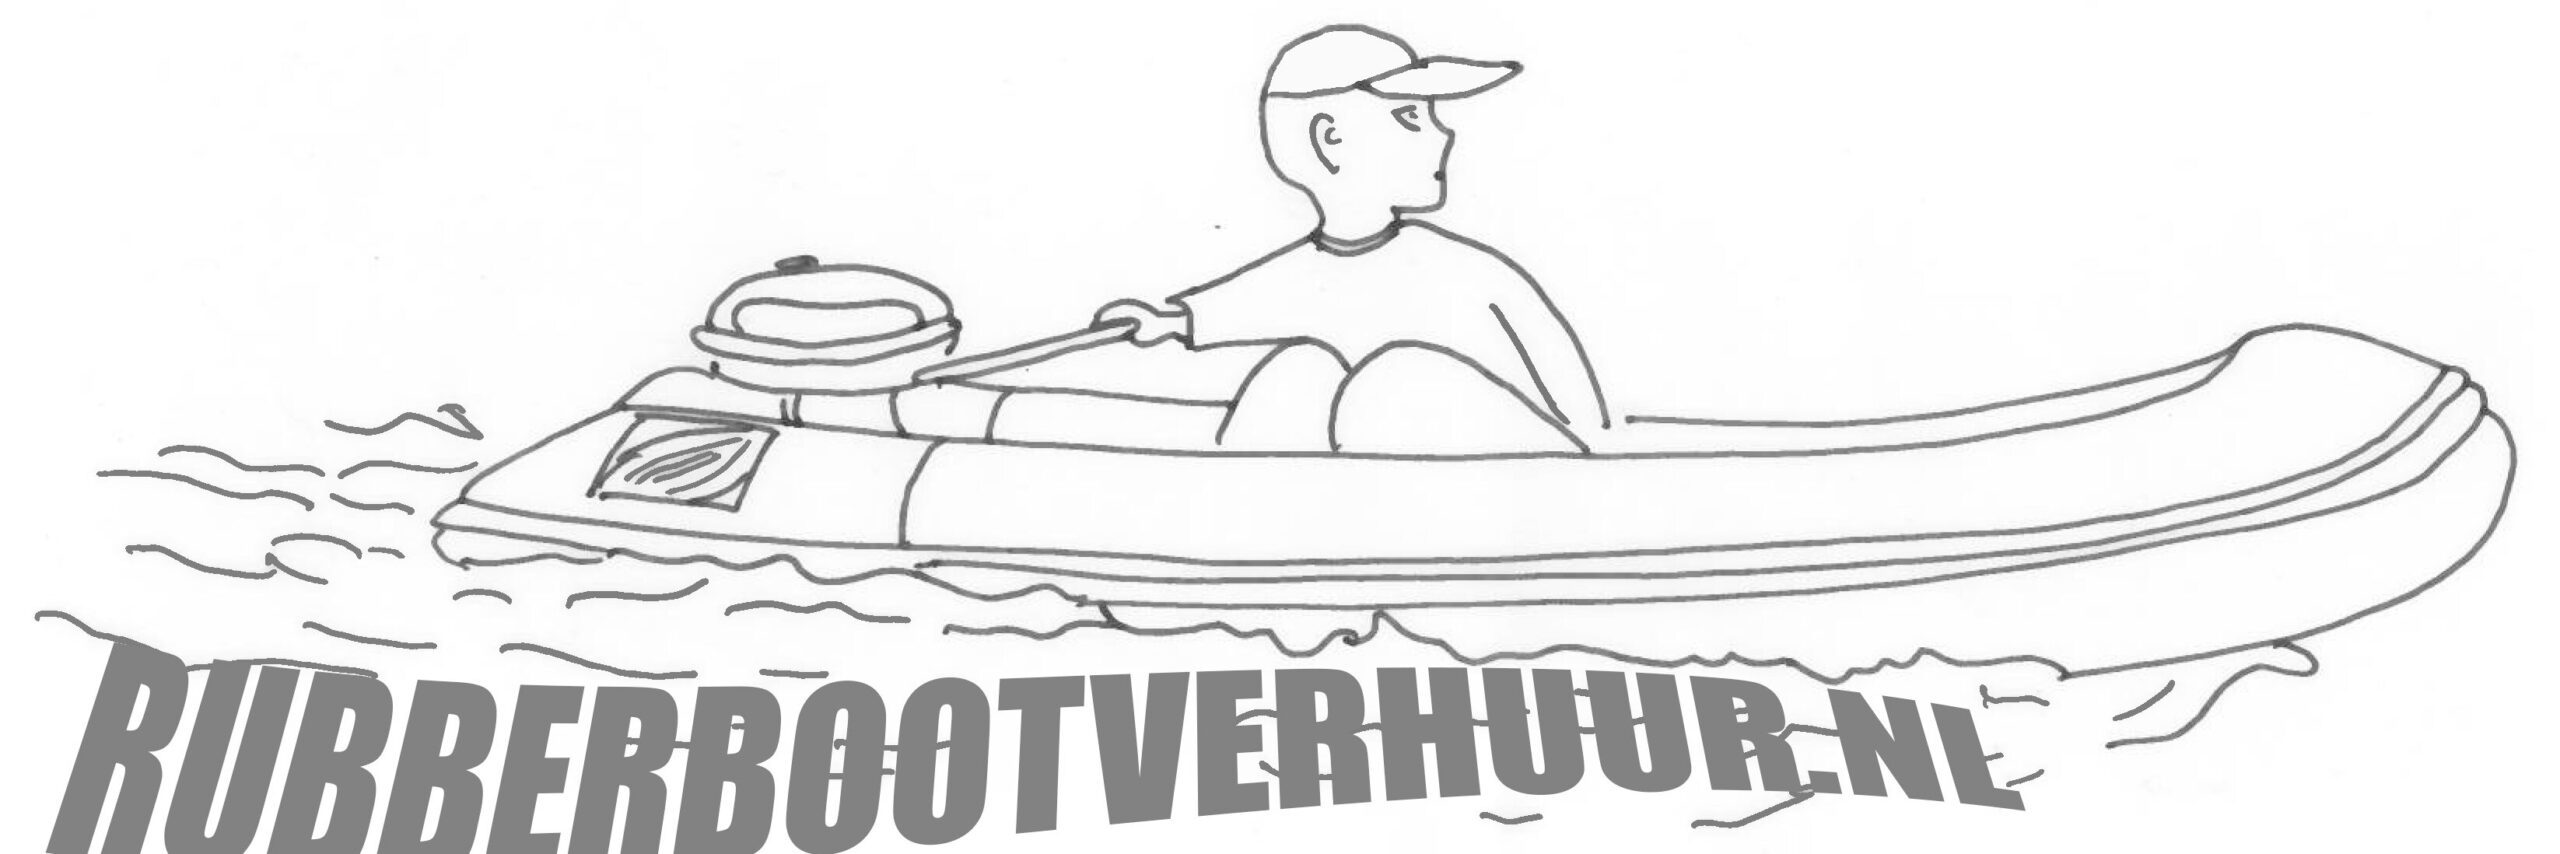 Rubberbootverhuur.nl